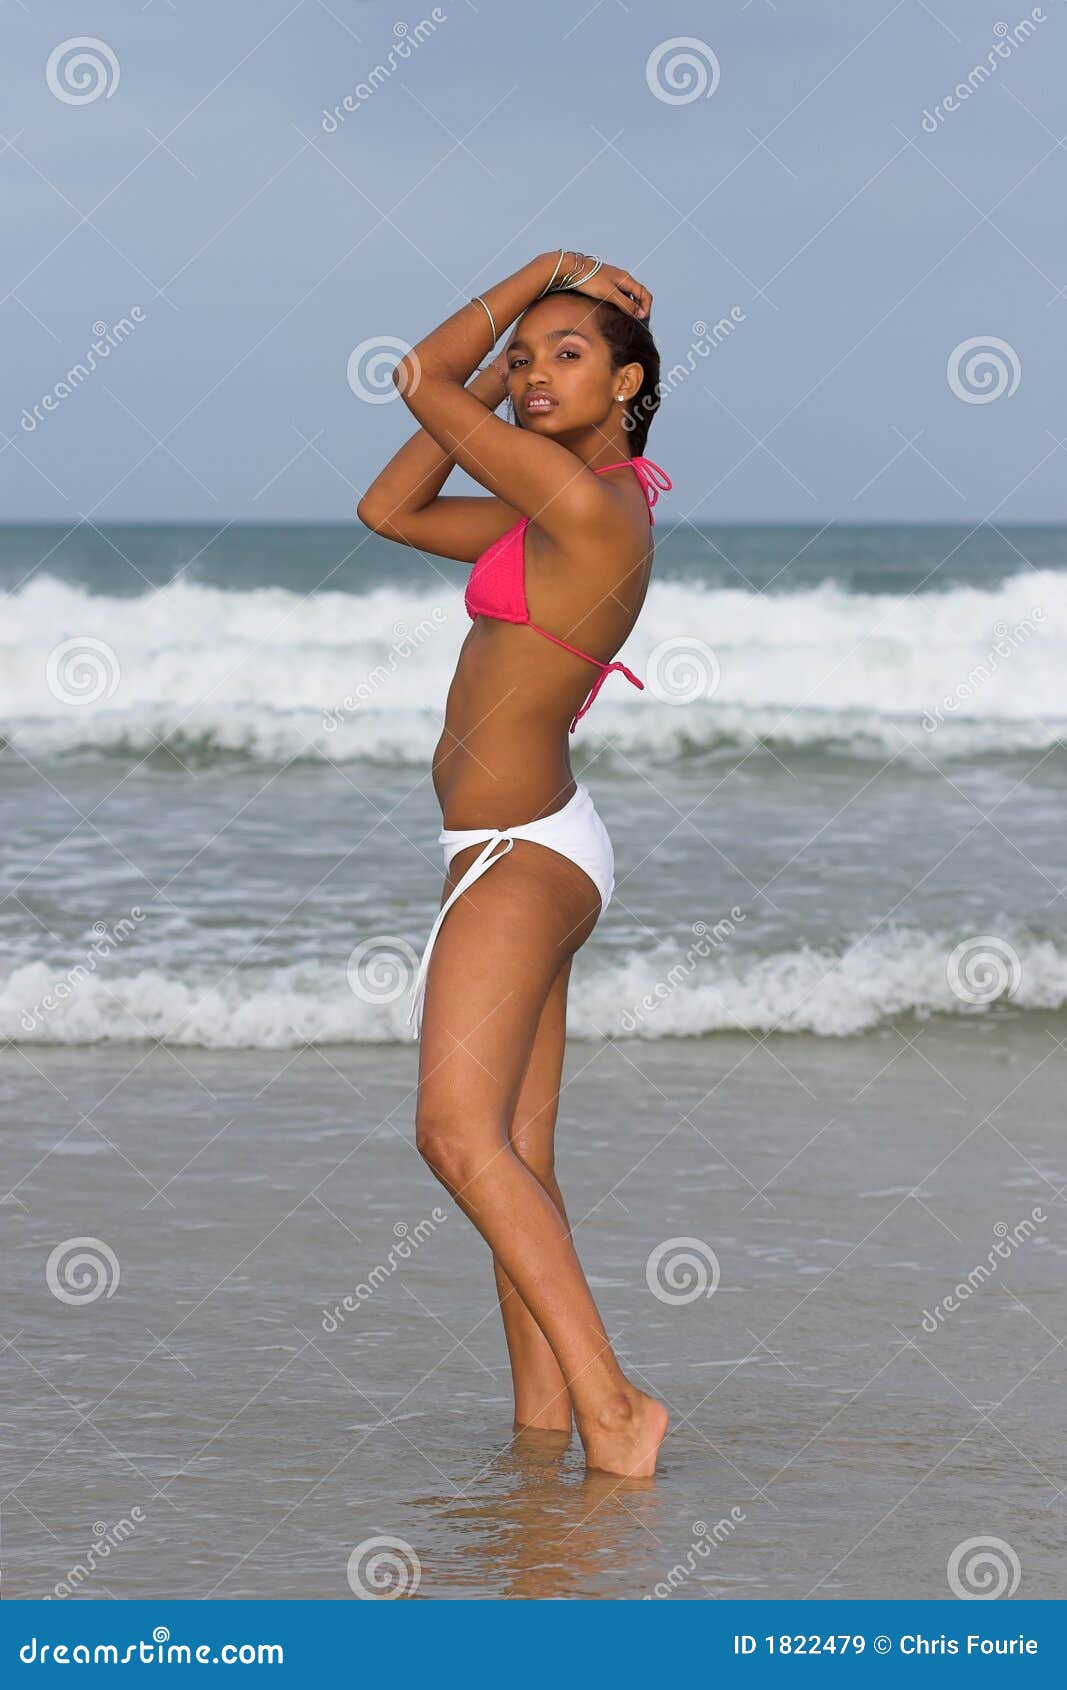 1,172 Teen White Bikini Stock Photos - Free & Royalty-Free Stock